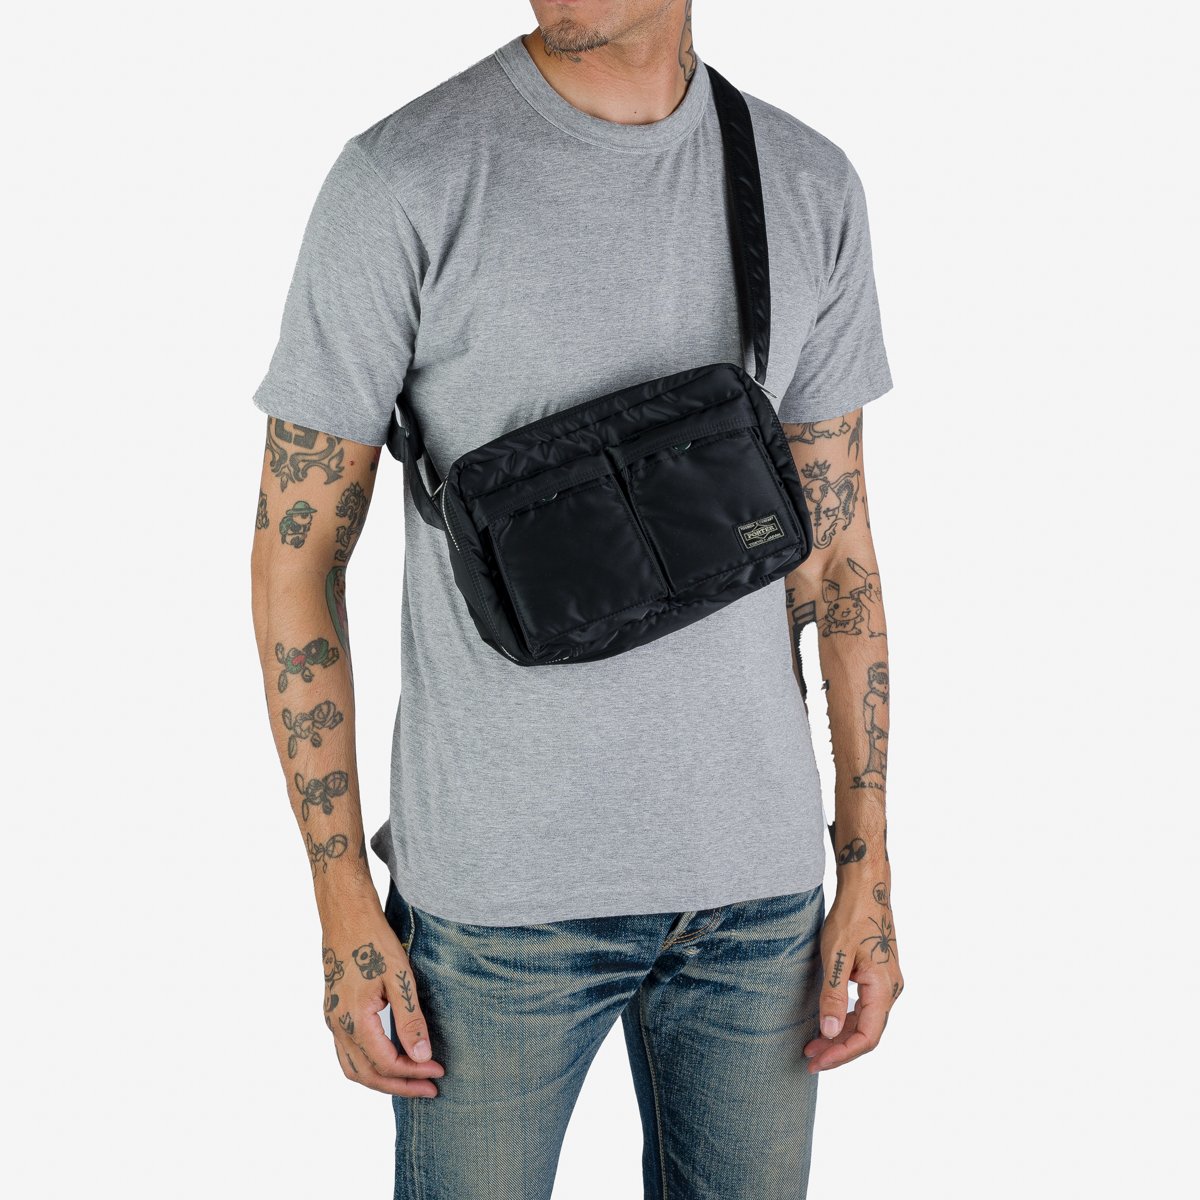 Porter Tanker Shoulder Bag (S) - 622-76963-50 - Sneakersnstuff